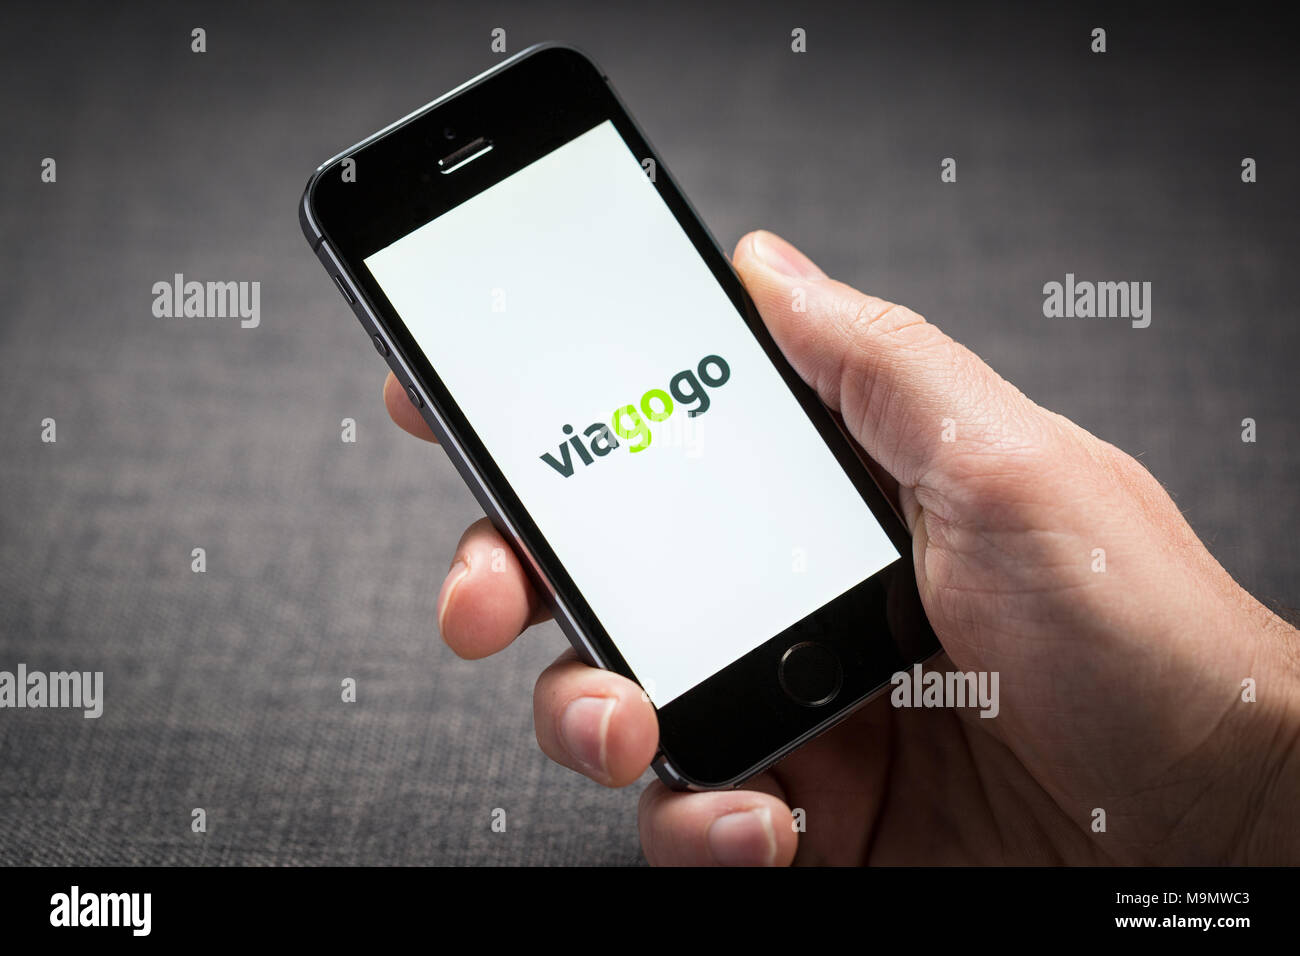 Viagogo billets app sur un iPhone Banque D'Images